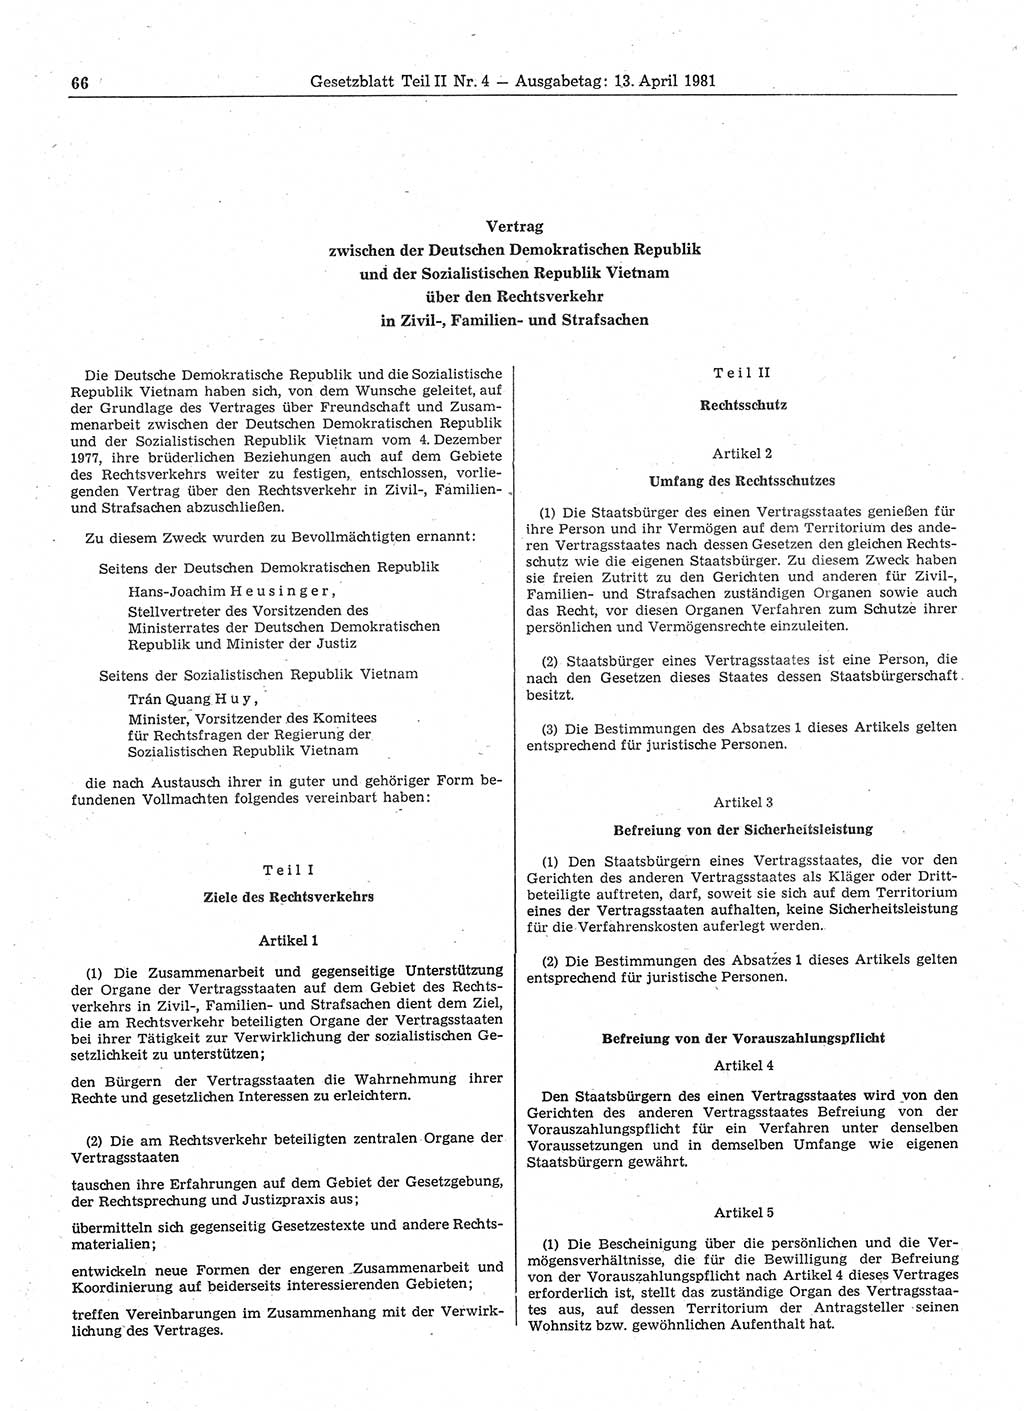 Gesetzblatt (GBl.) der Deutschen Demokratischen Republik (DDR) Teil ⅠⅠ 1981, Seite 66 (GBl. DDR ⅠⅠ 1981, S. 66)